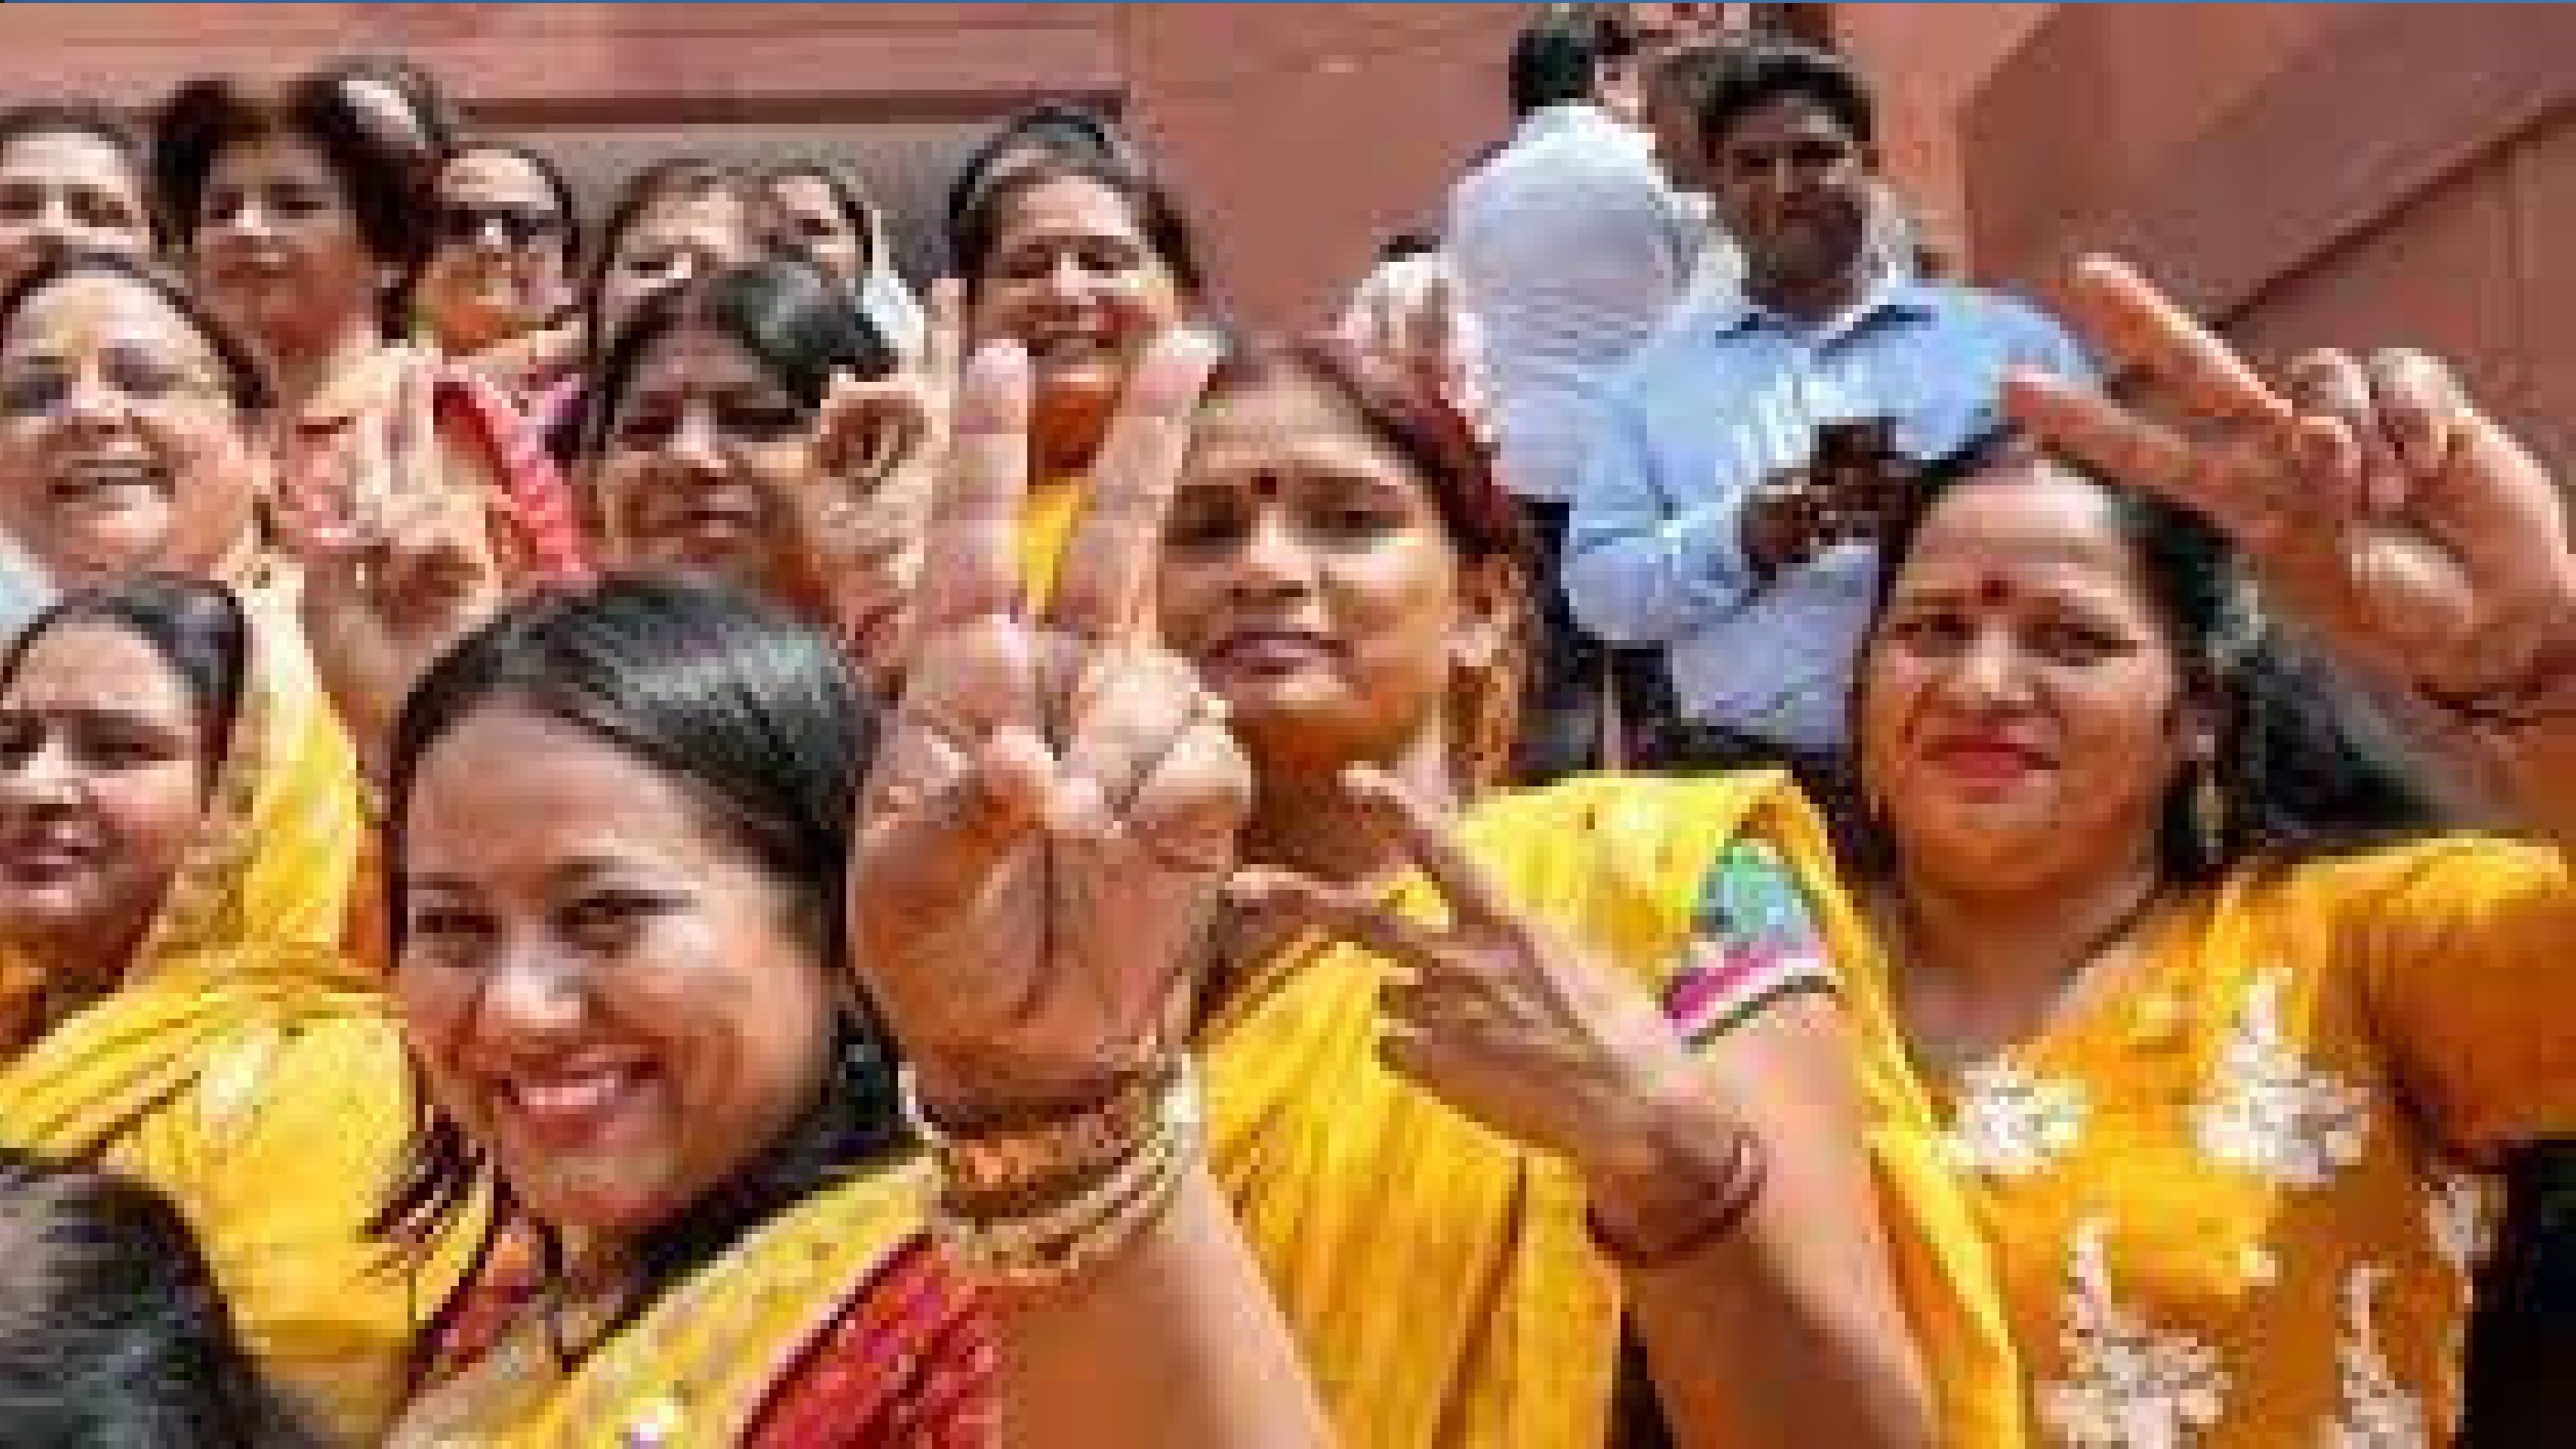 लोकसभा के बाद राज्यसभा से भी महिला आरक्षण विधेयक पारित; 215 सांसदों ने पक्ष में किया वोट